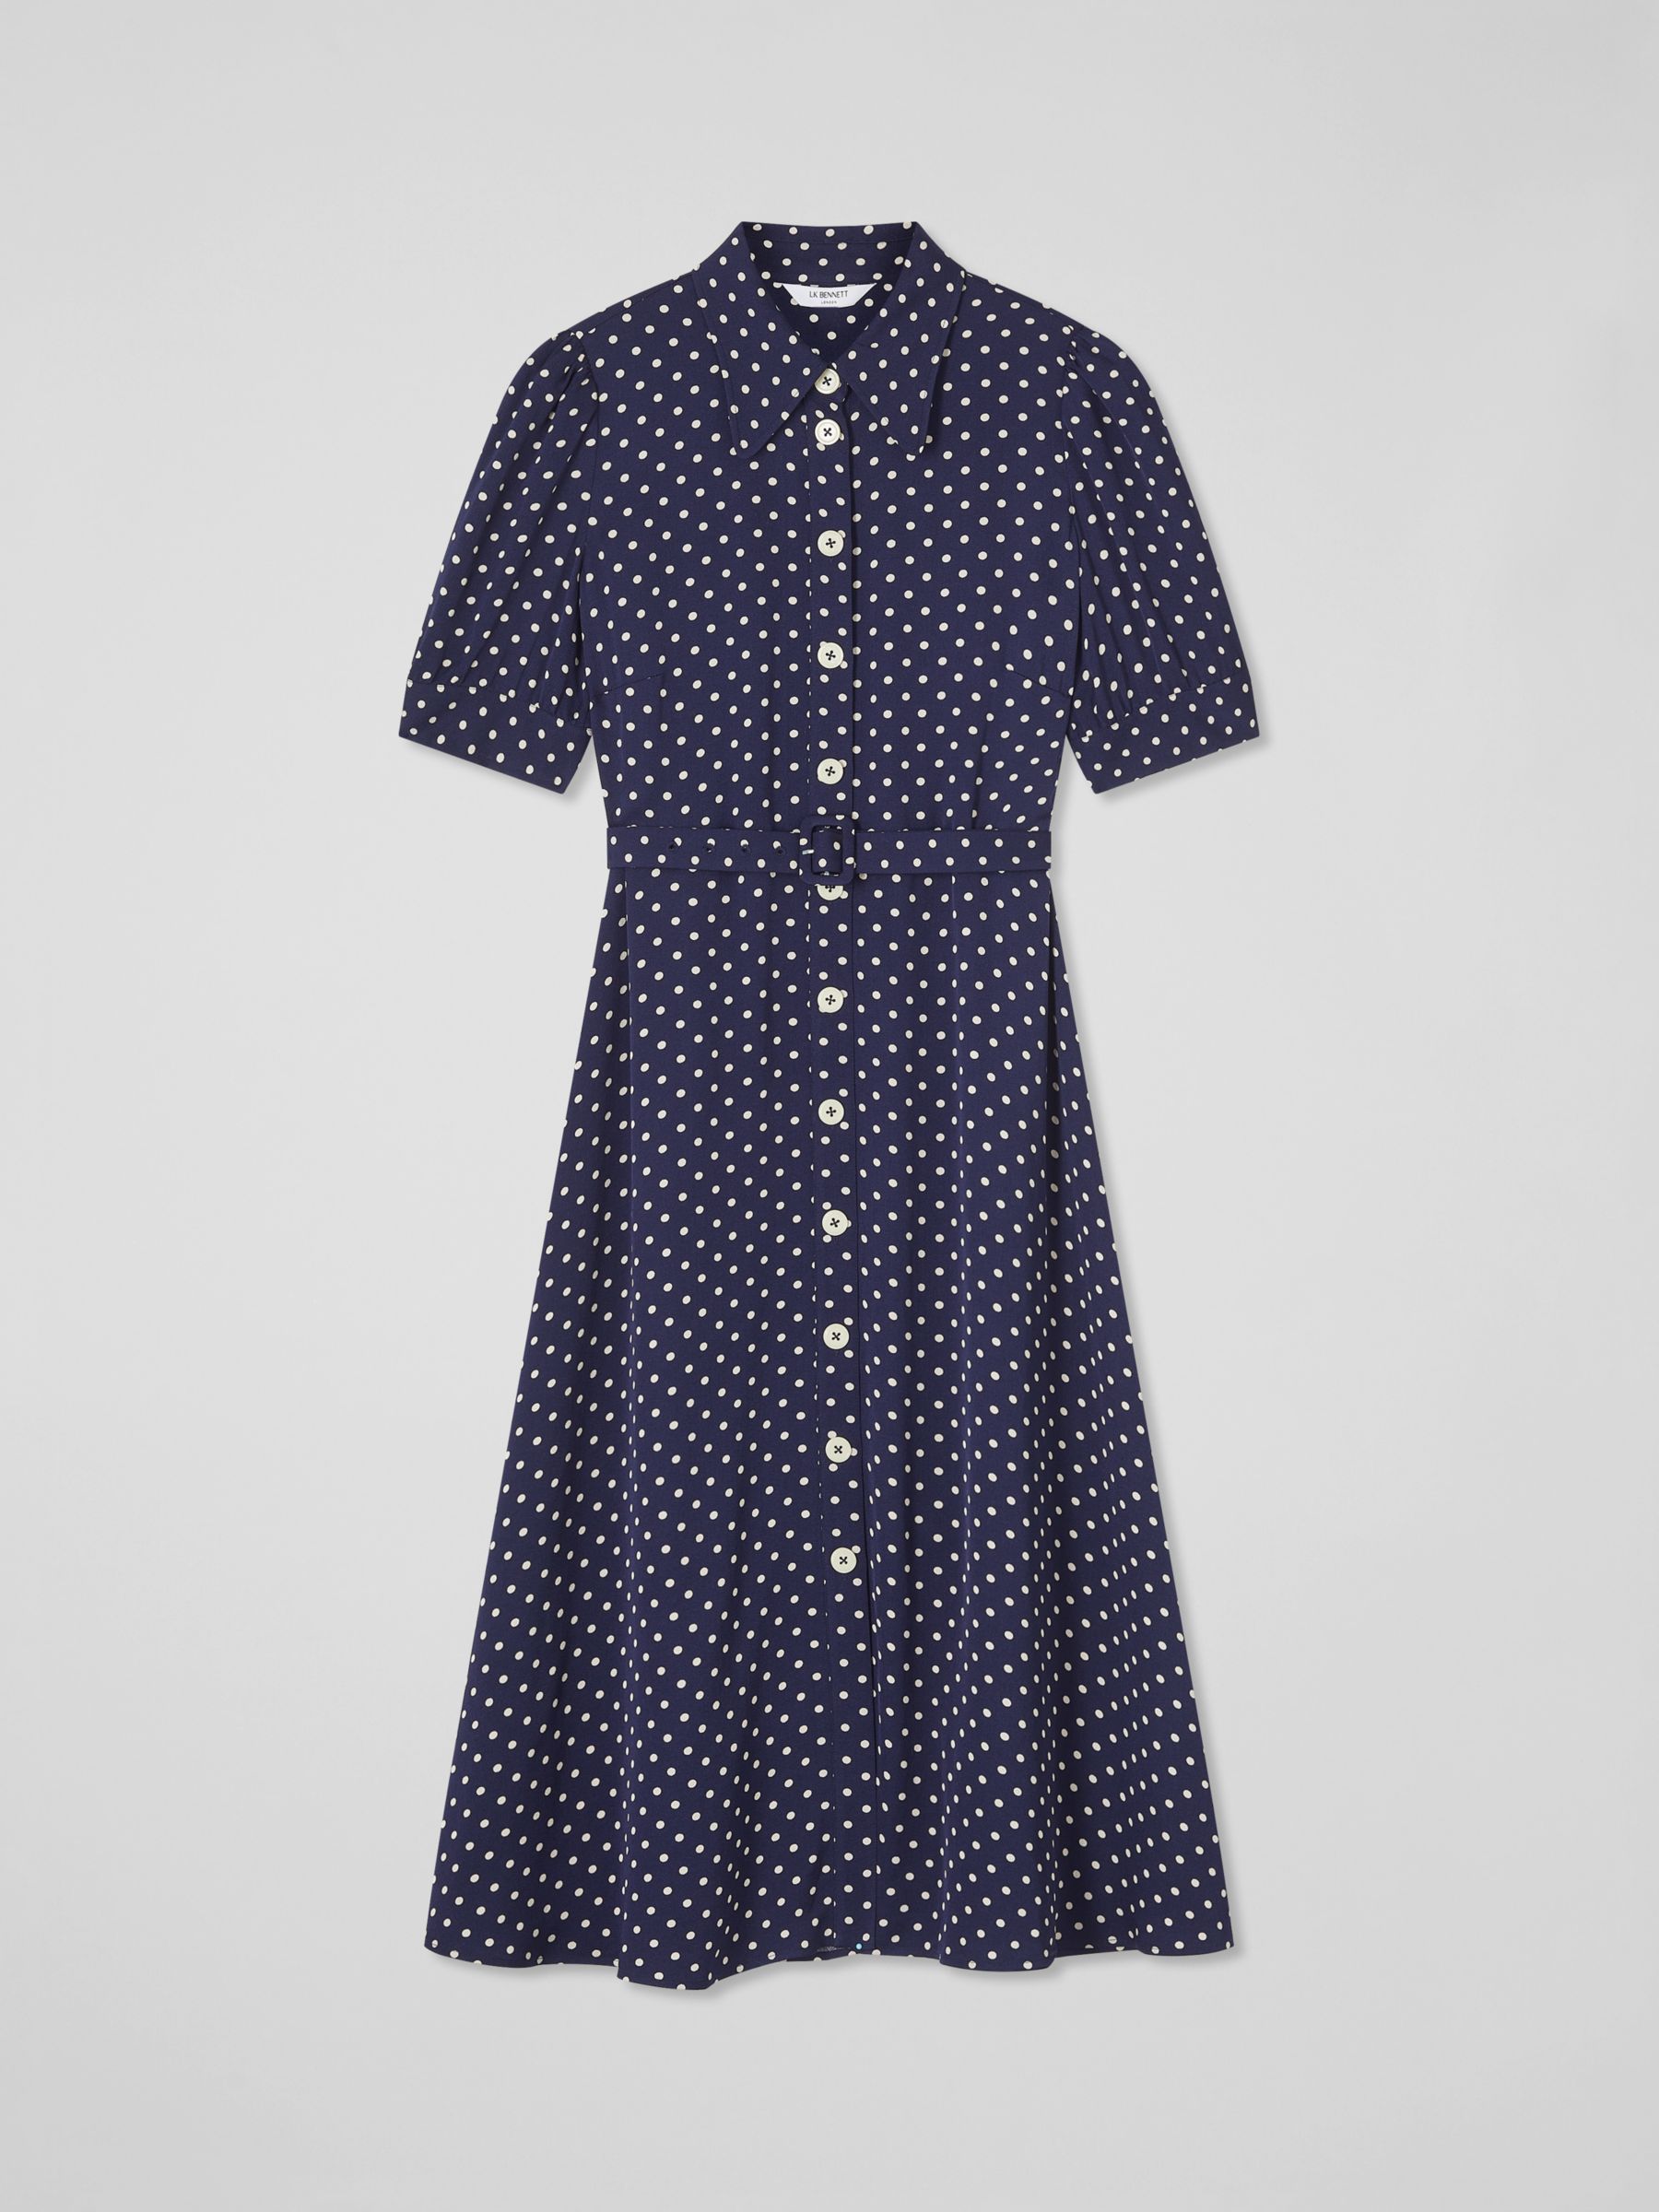 L.K.Bennett Valerie Spot Print Shirt Midi Dress, Navy/Cream, 12